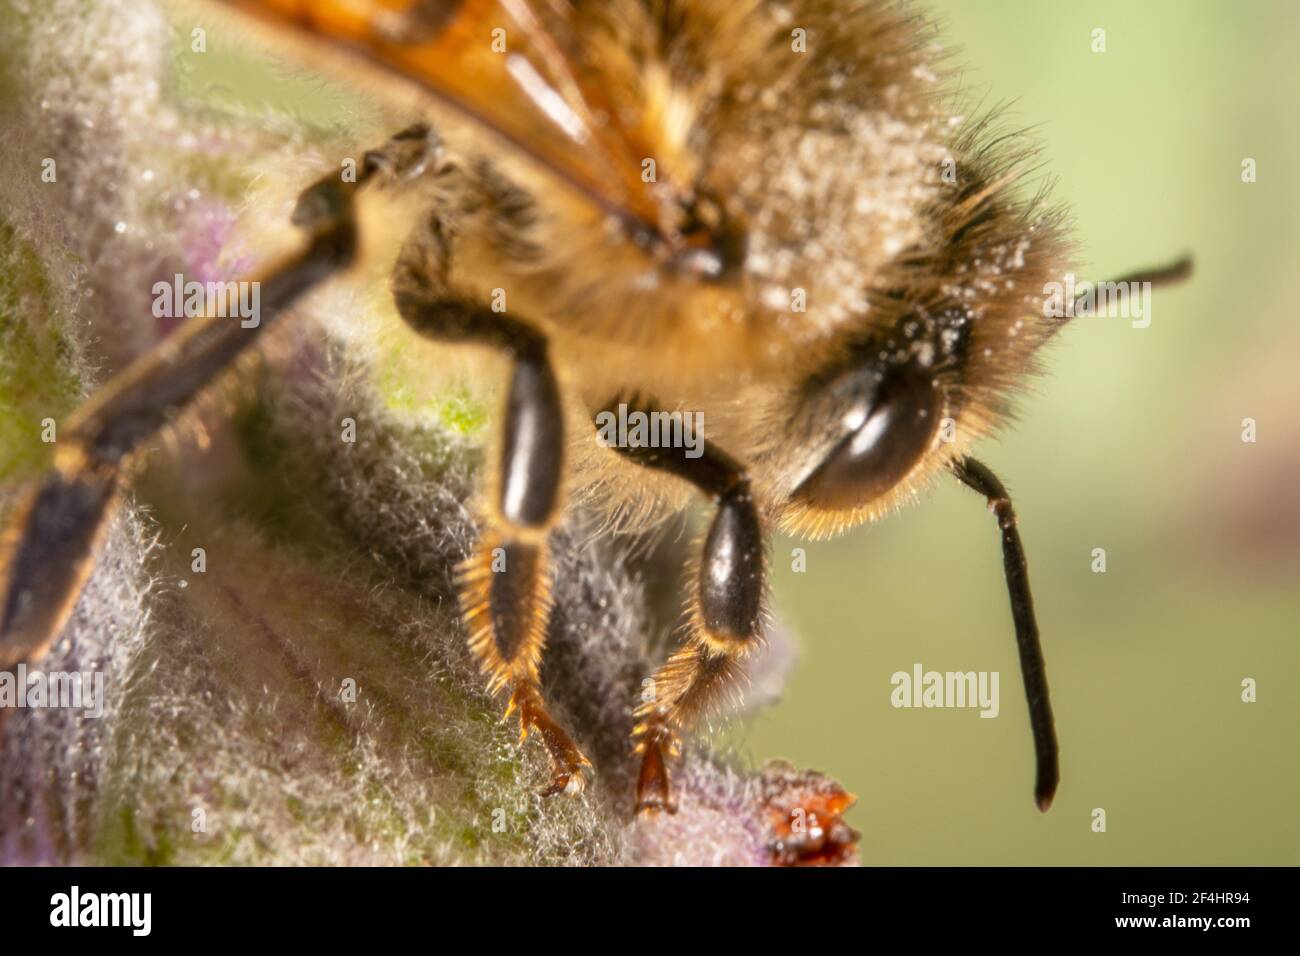 Primer plano de una abeja de miel peluda con naranja piernas Foto de stock